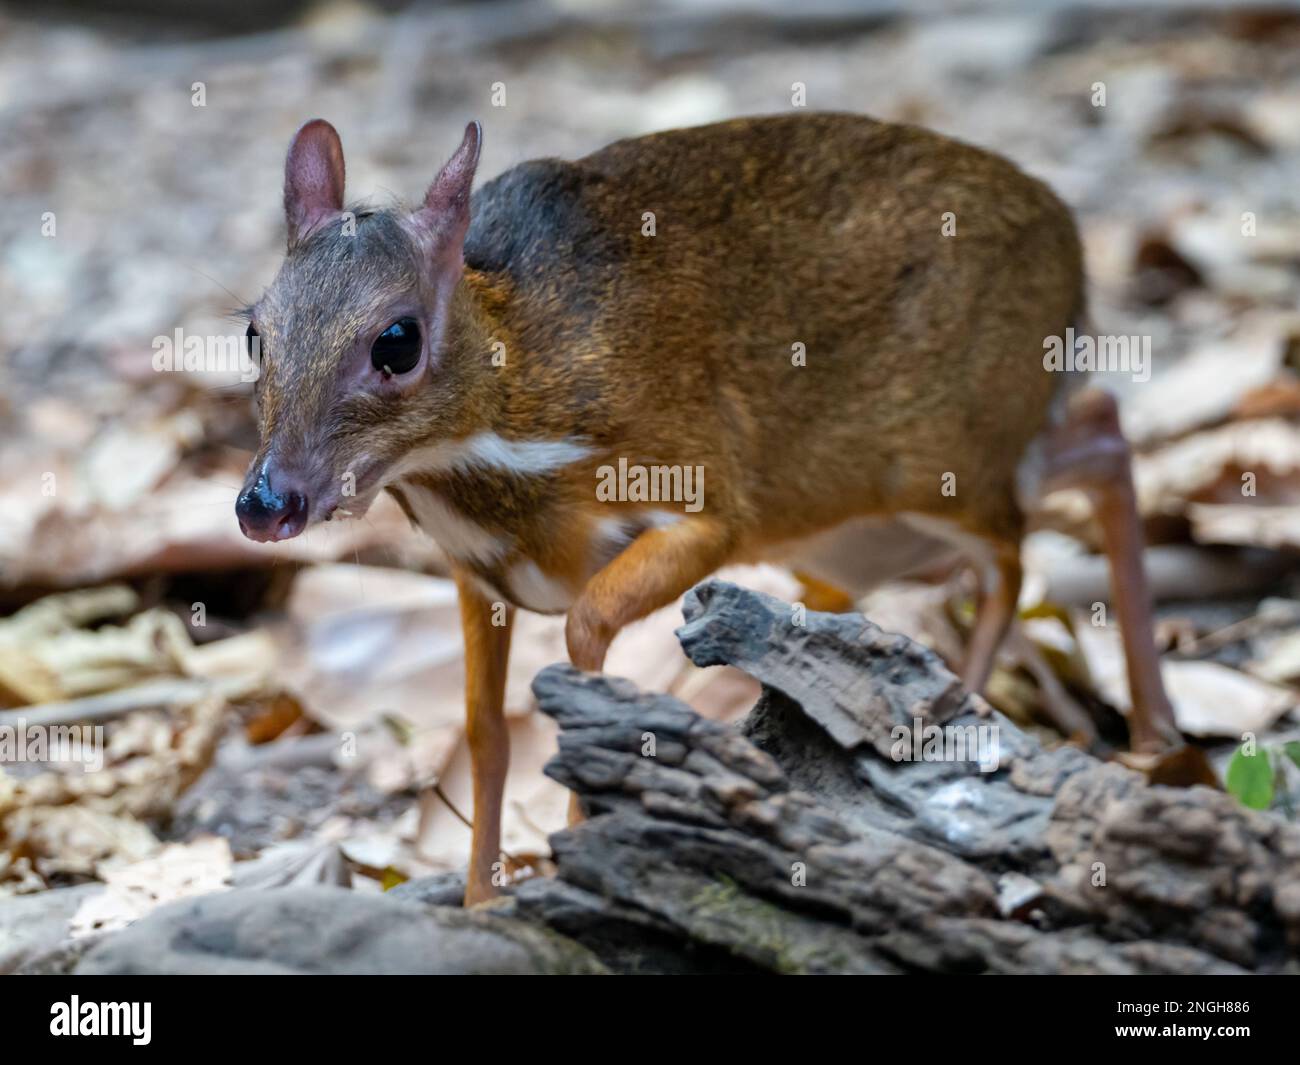 Kleiner orientalischer Chevrotain, Tragulus kanchil, auch bekannt als kleiner Mäusehirsch, einer der kleinsten Hufsäugetiere der Welt in Thailand Stockfoto